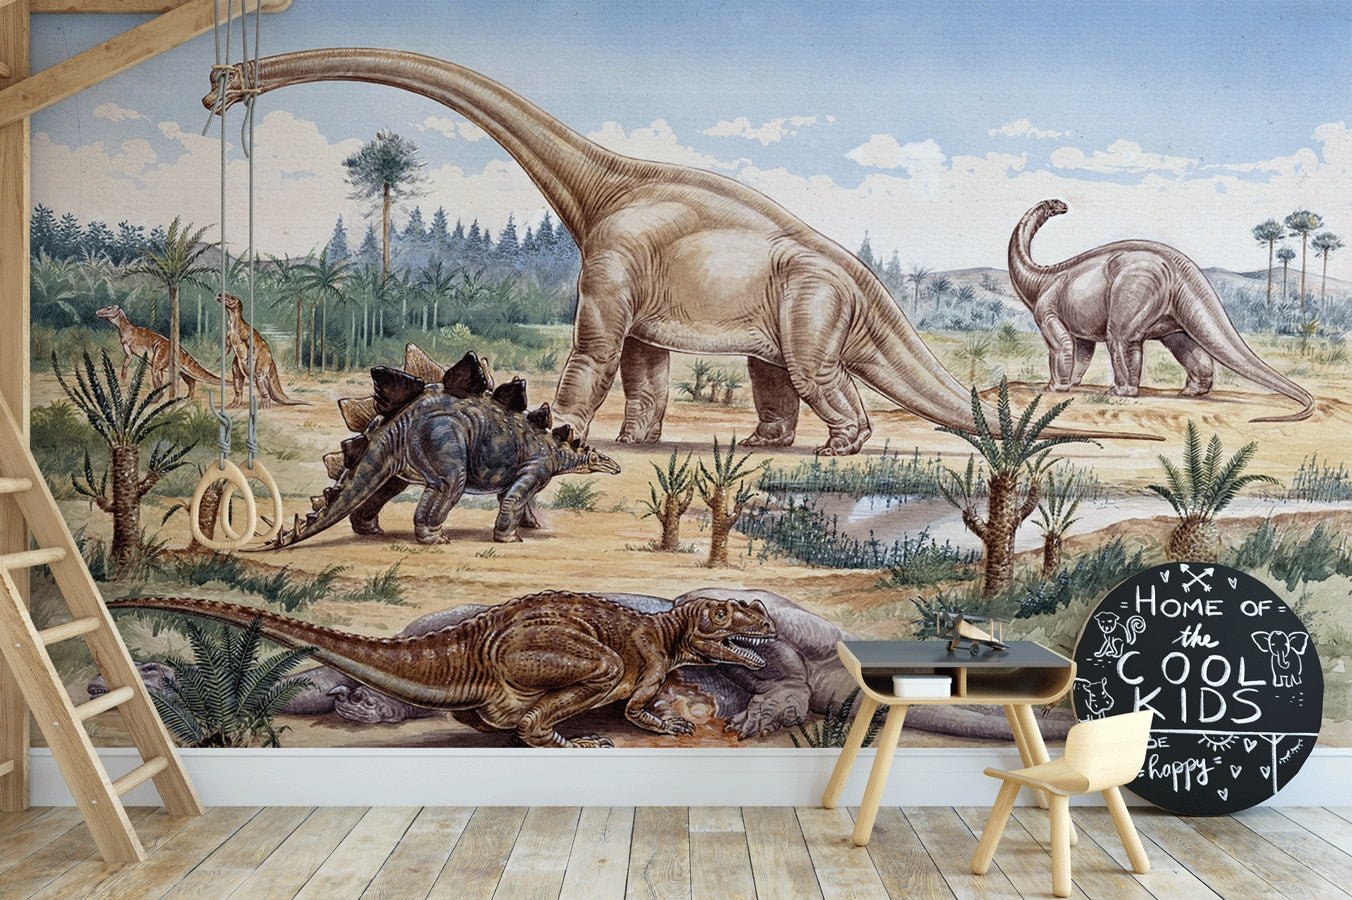 Le temps des dinosaures en Argentine